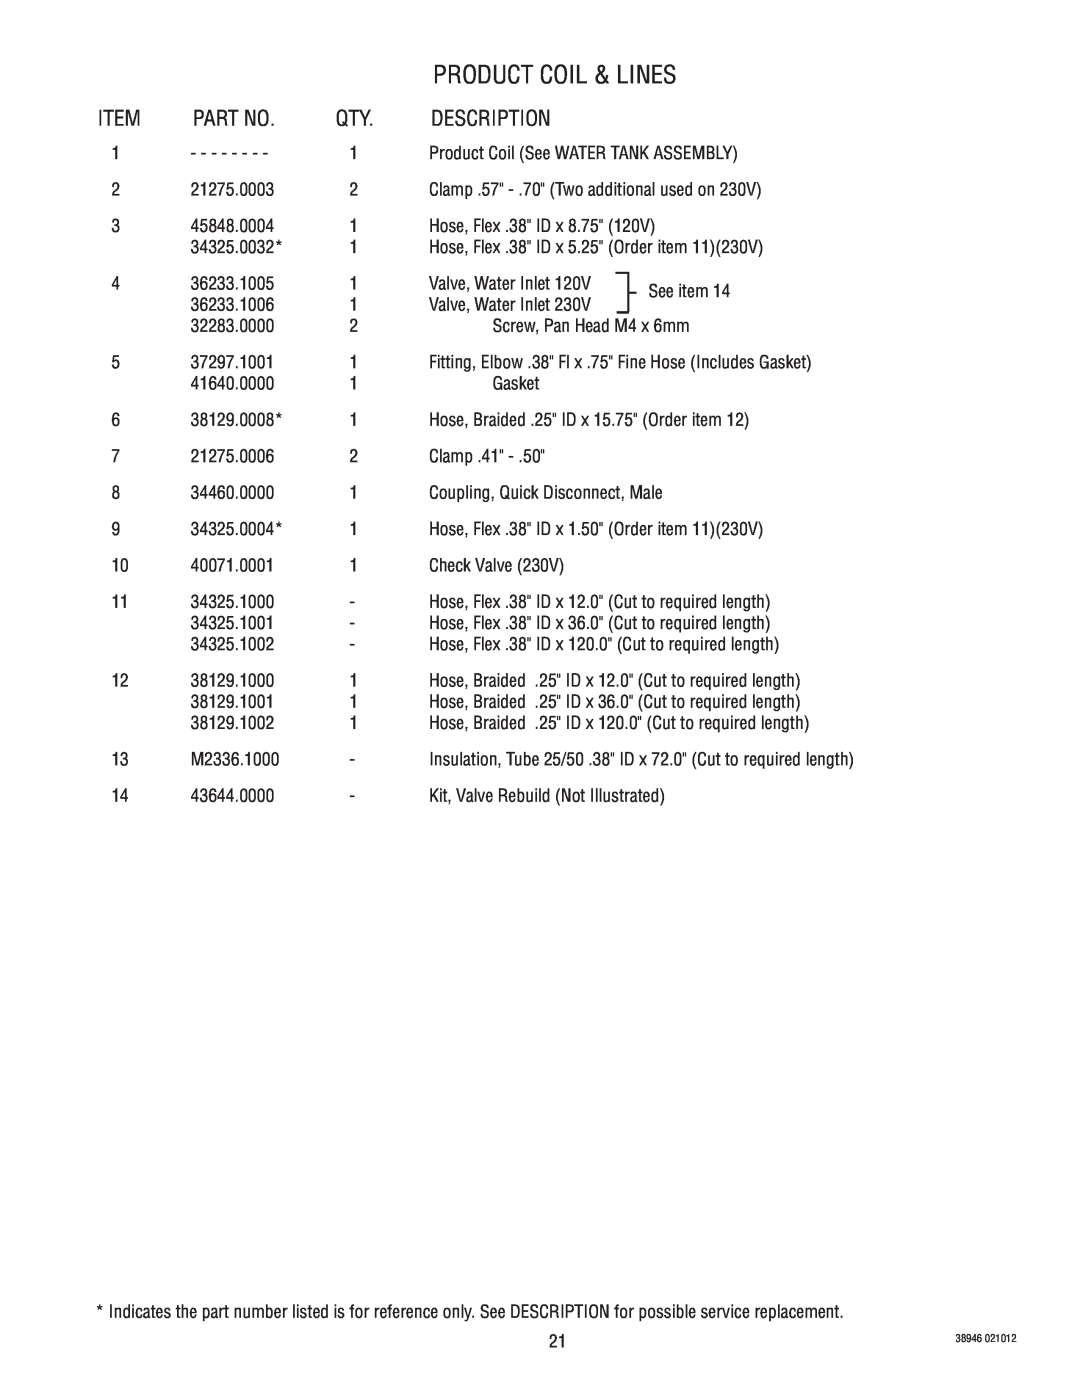 Bunn JDF-2S manual Product Coil & Lines, Description 